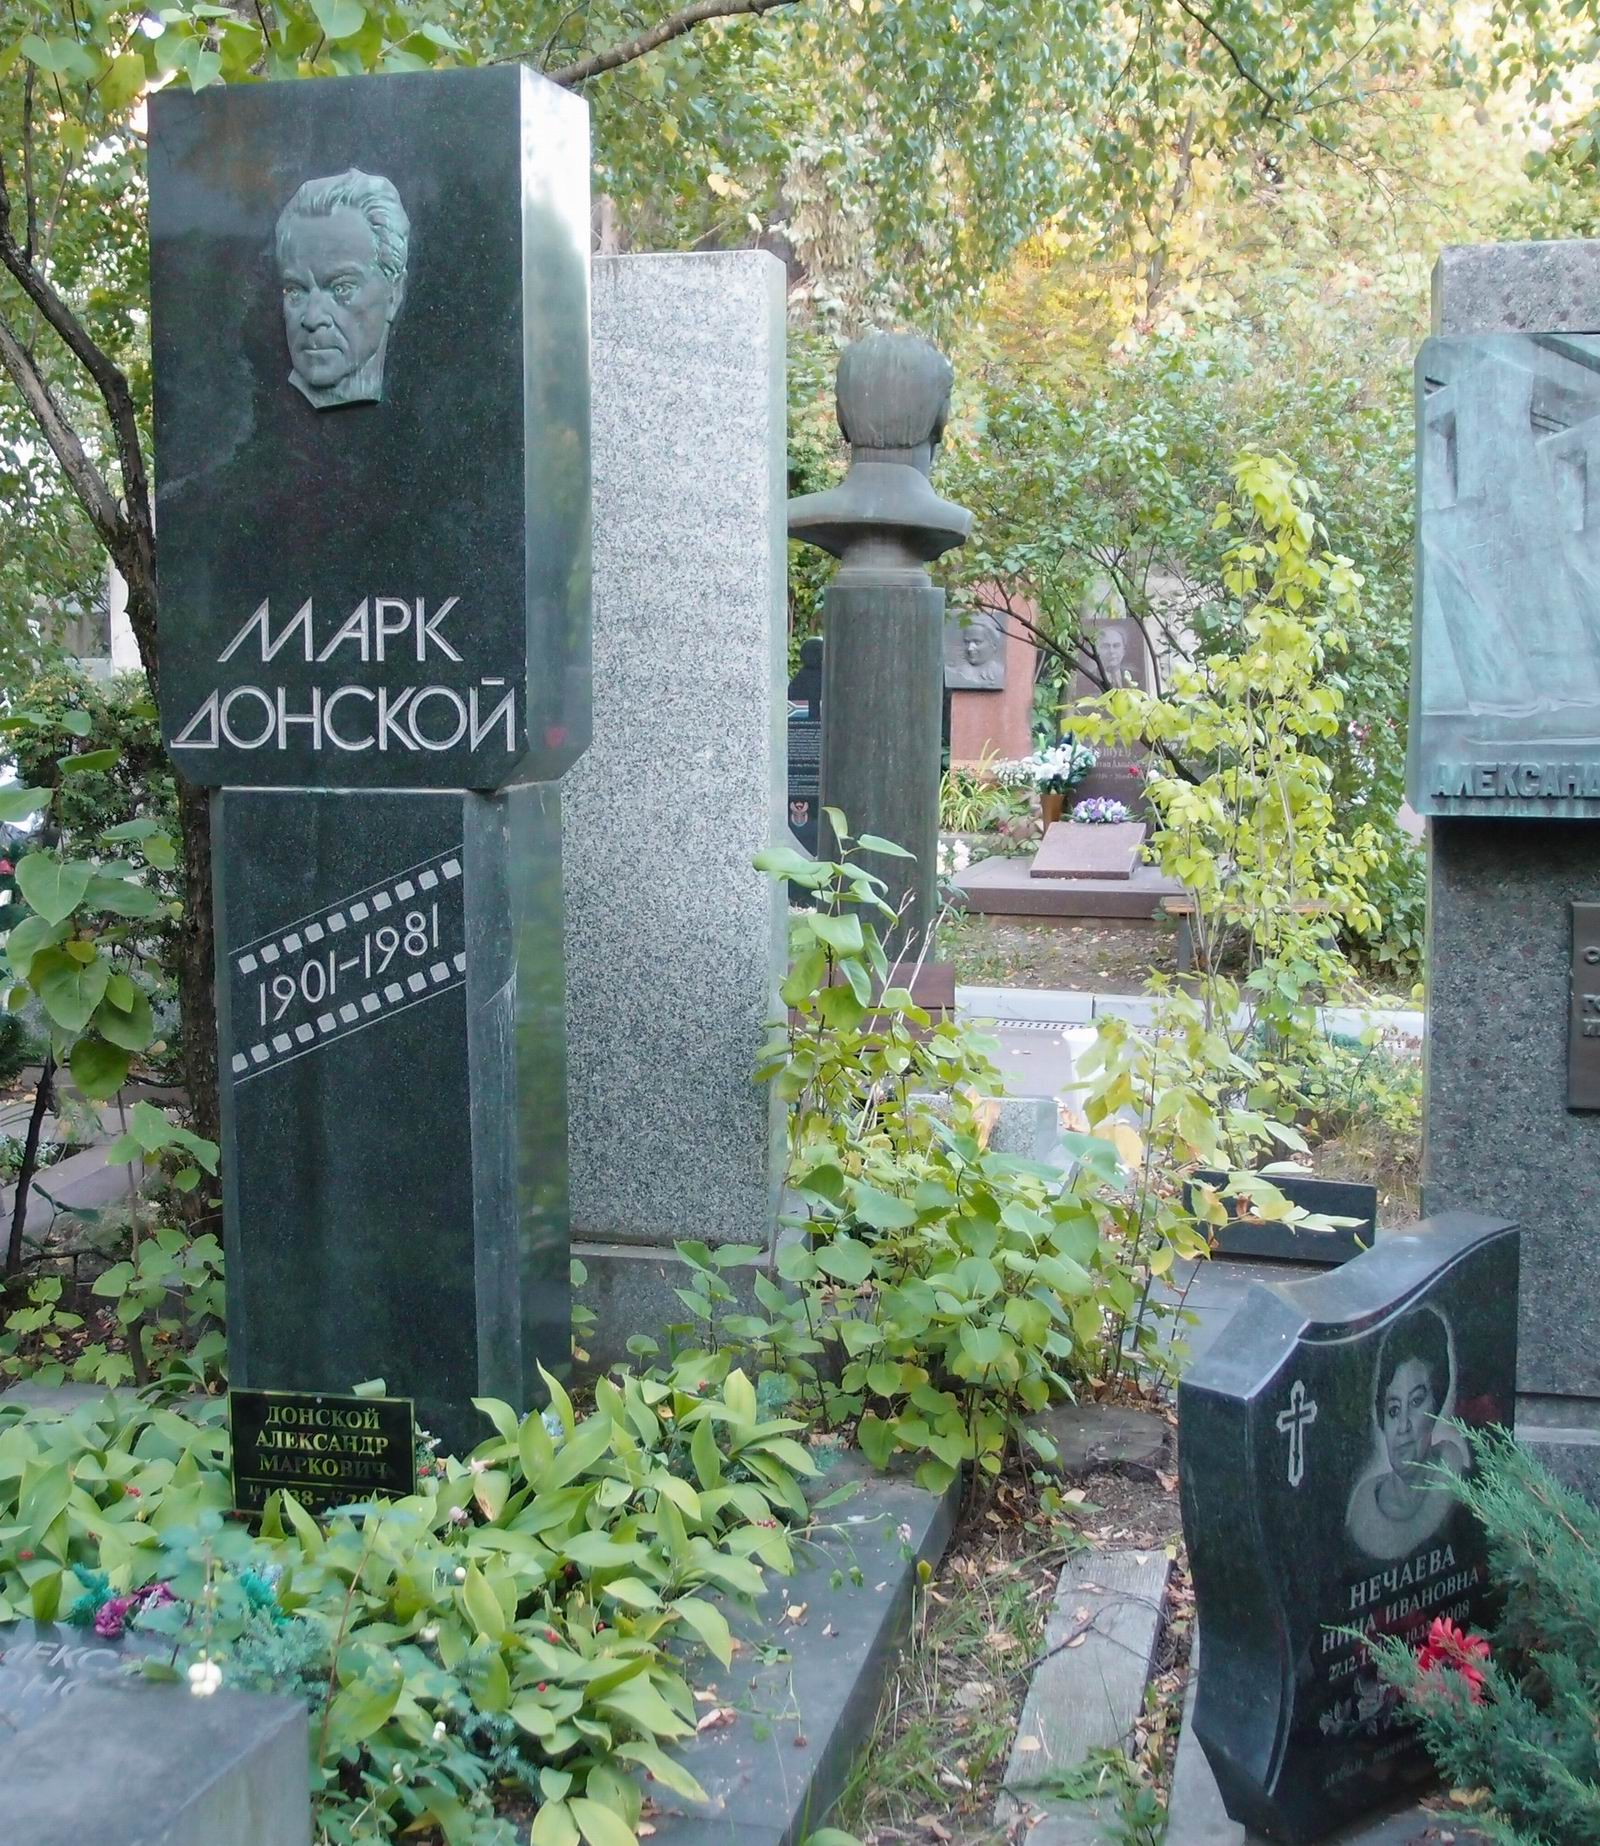 Памятник на могиле Донского М.С. (1901-1981), ск. Б.Дубрович, арх. В.Рубцов, на Новодевичьем кладбище (9-7-6).